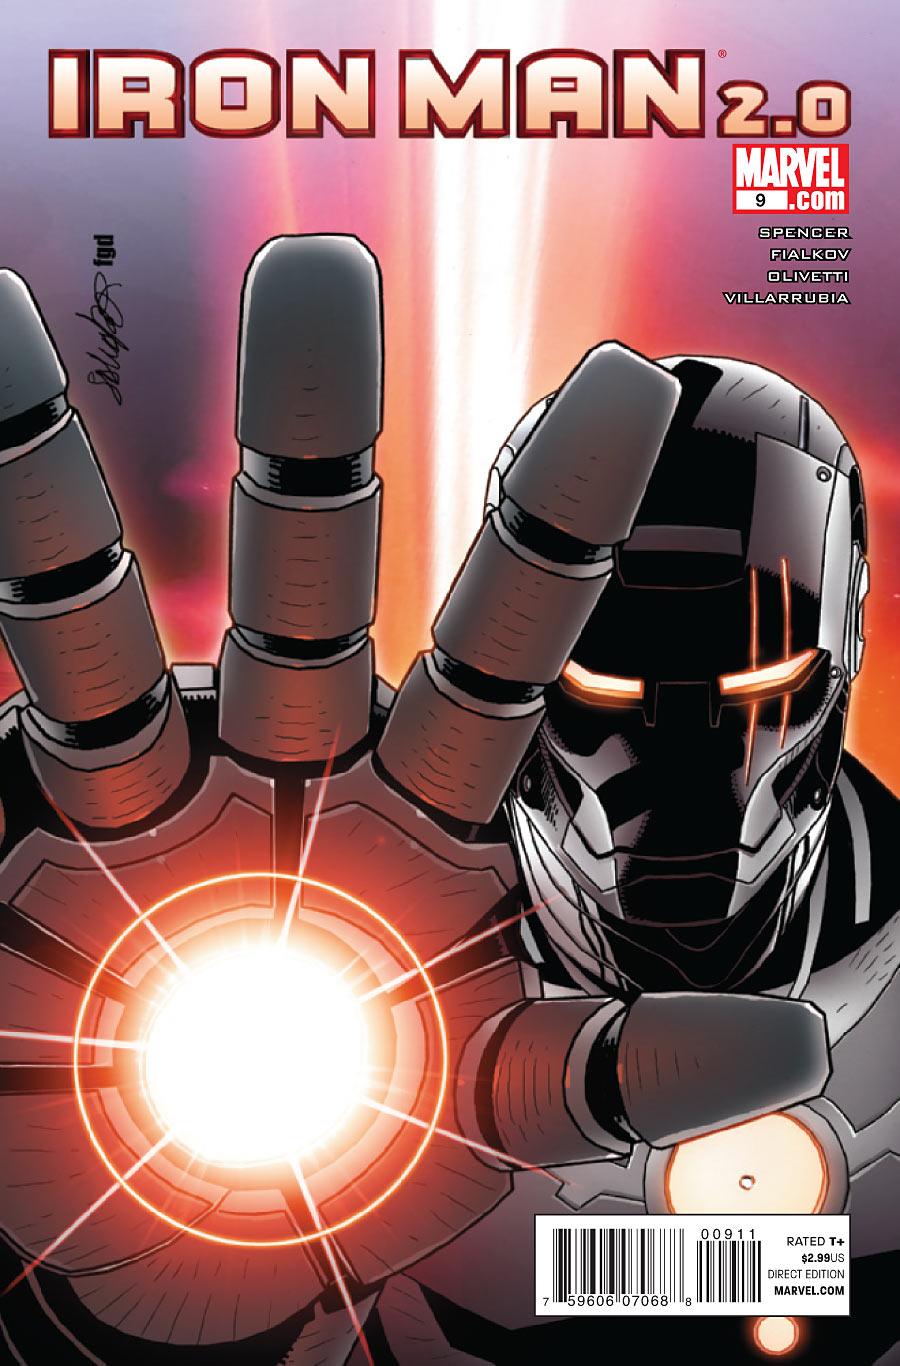 Iron Man 2.0 Vol. 1 #9